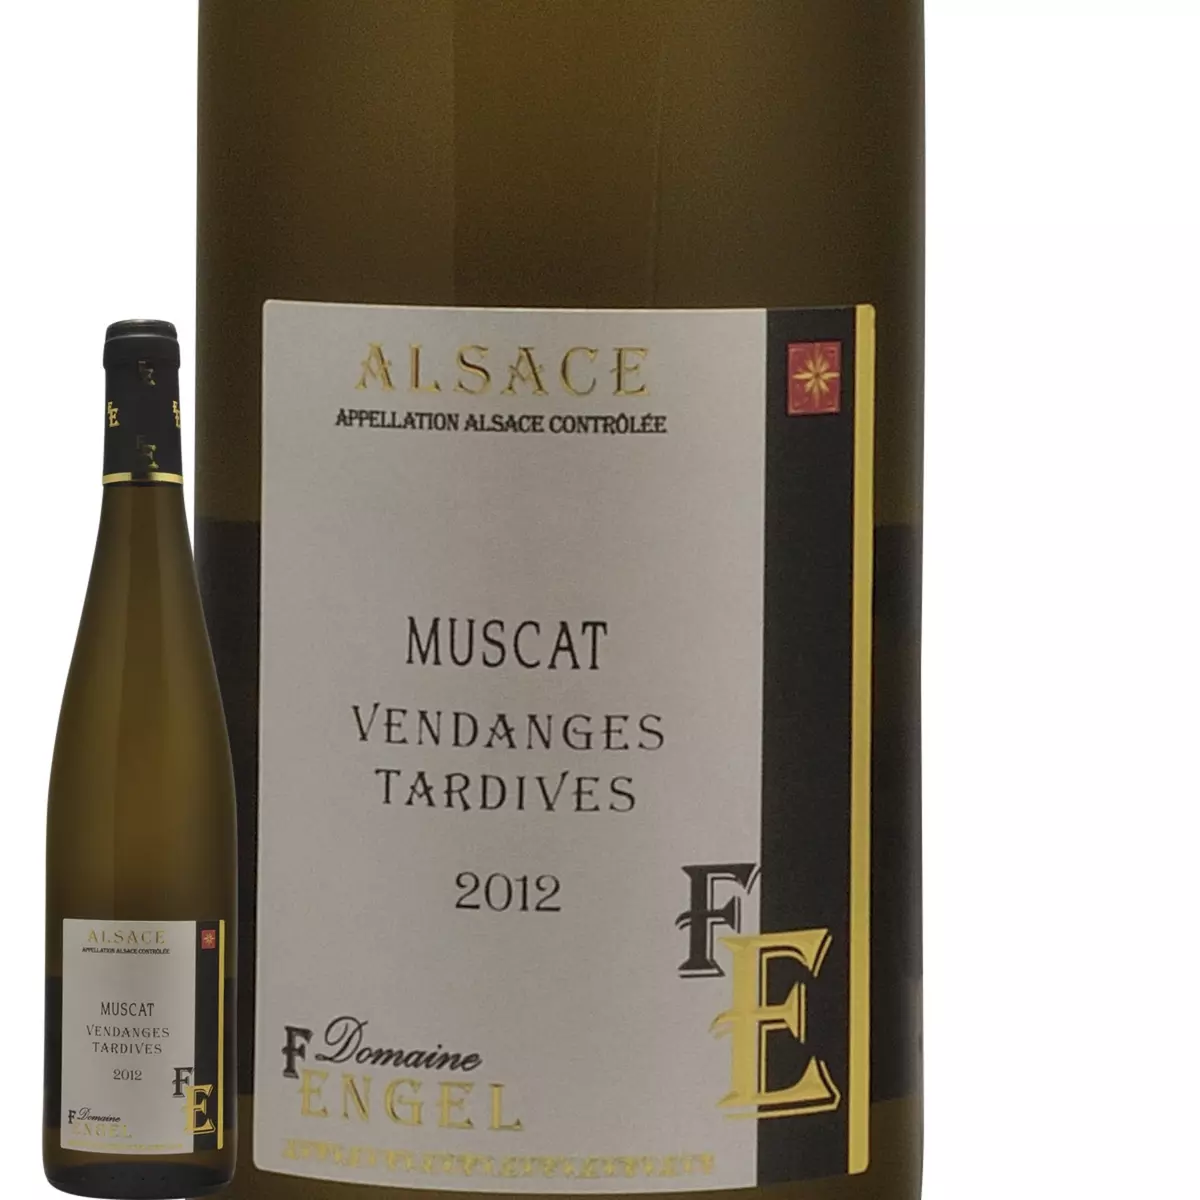 Domaine F. Engel Alsace Muscat Vendanges Tardives Blanc 2012